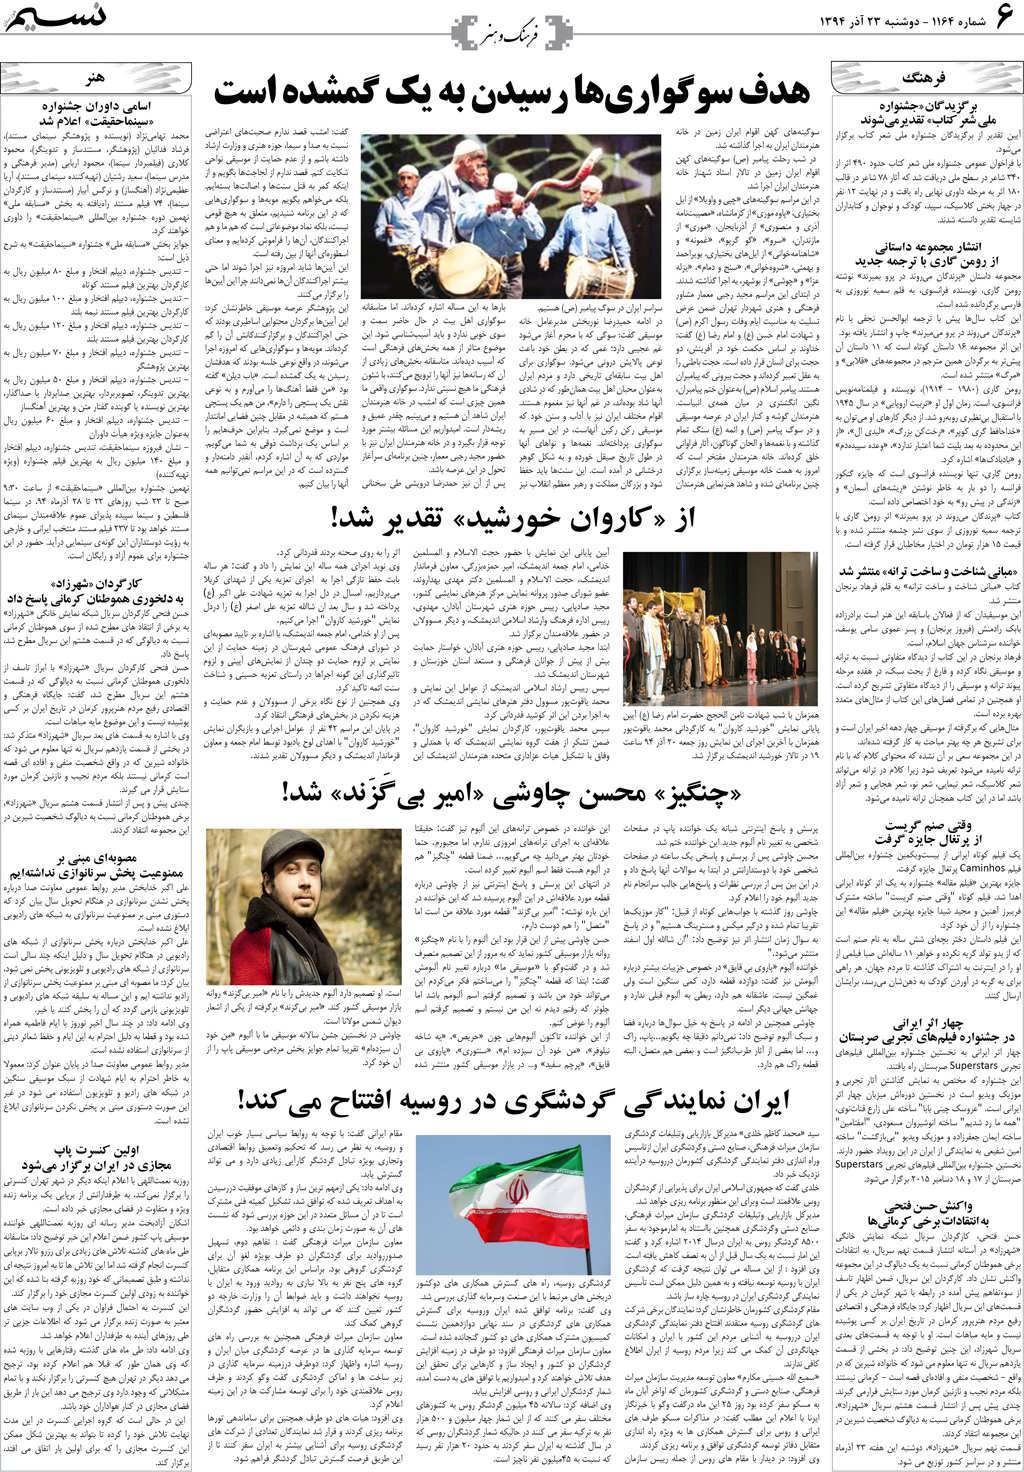 صفحه فرهنگ و هنر روزنامه نسیم شماره 1164